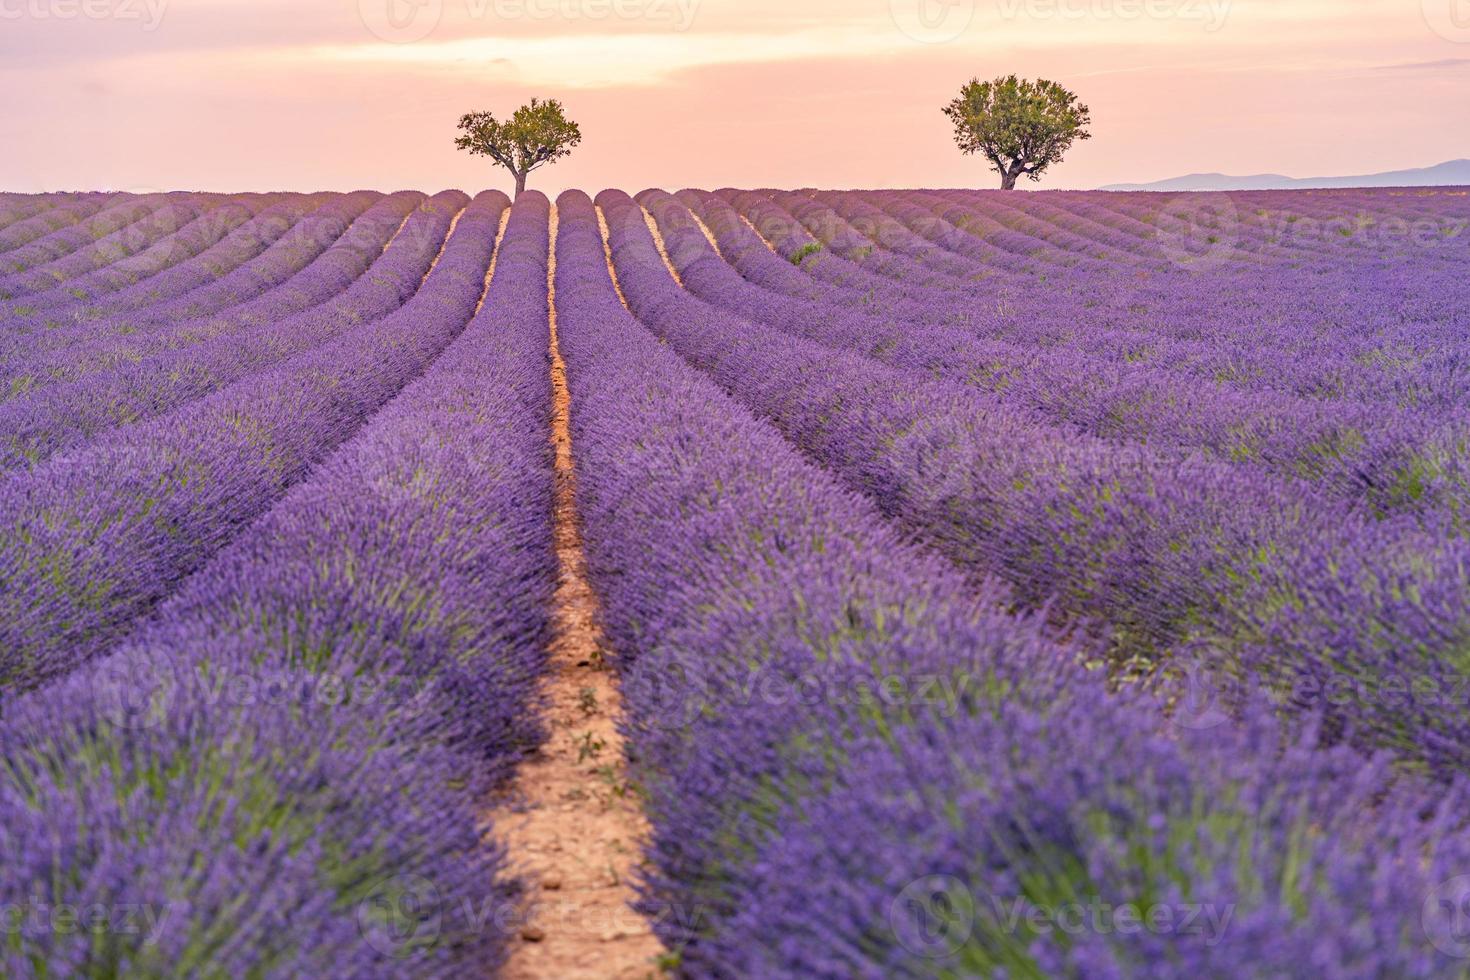 lavendel veld- zomer zonsondergang landschap in de buurt valensole. Provence, Frankrijk. geweldig natuur landschap, artistiek zonsondergang licht met wazig achtergrond, inspirerend natuur visie. mooi vredig tafereel foto